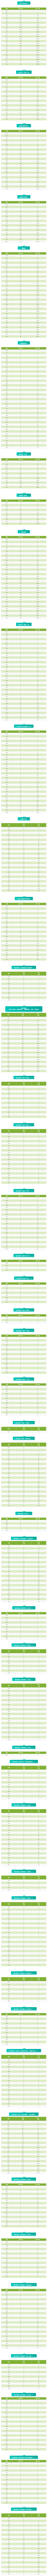 2020四川艺术类专业统考成绩五分段表出炉